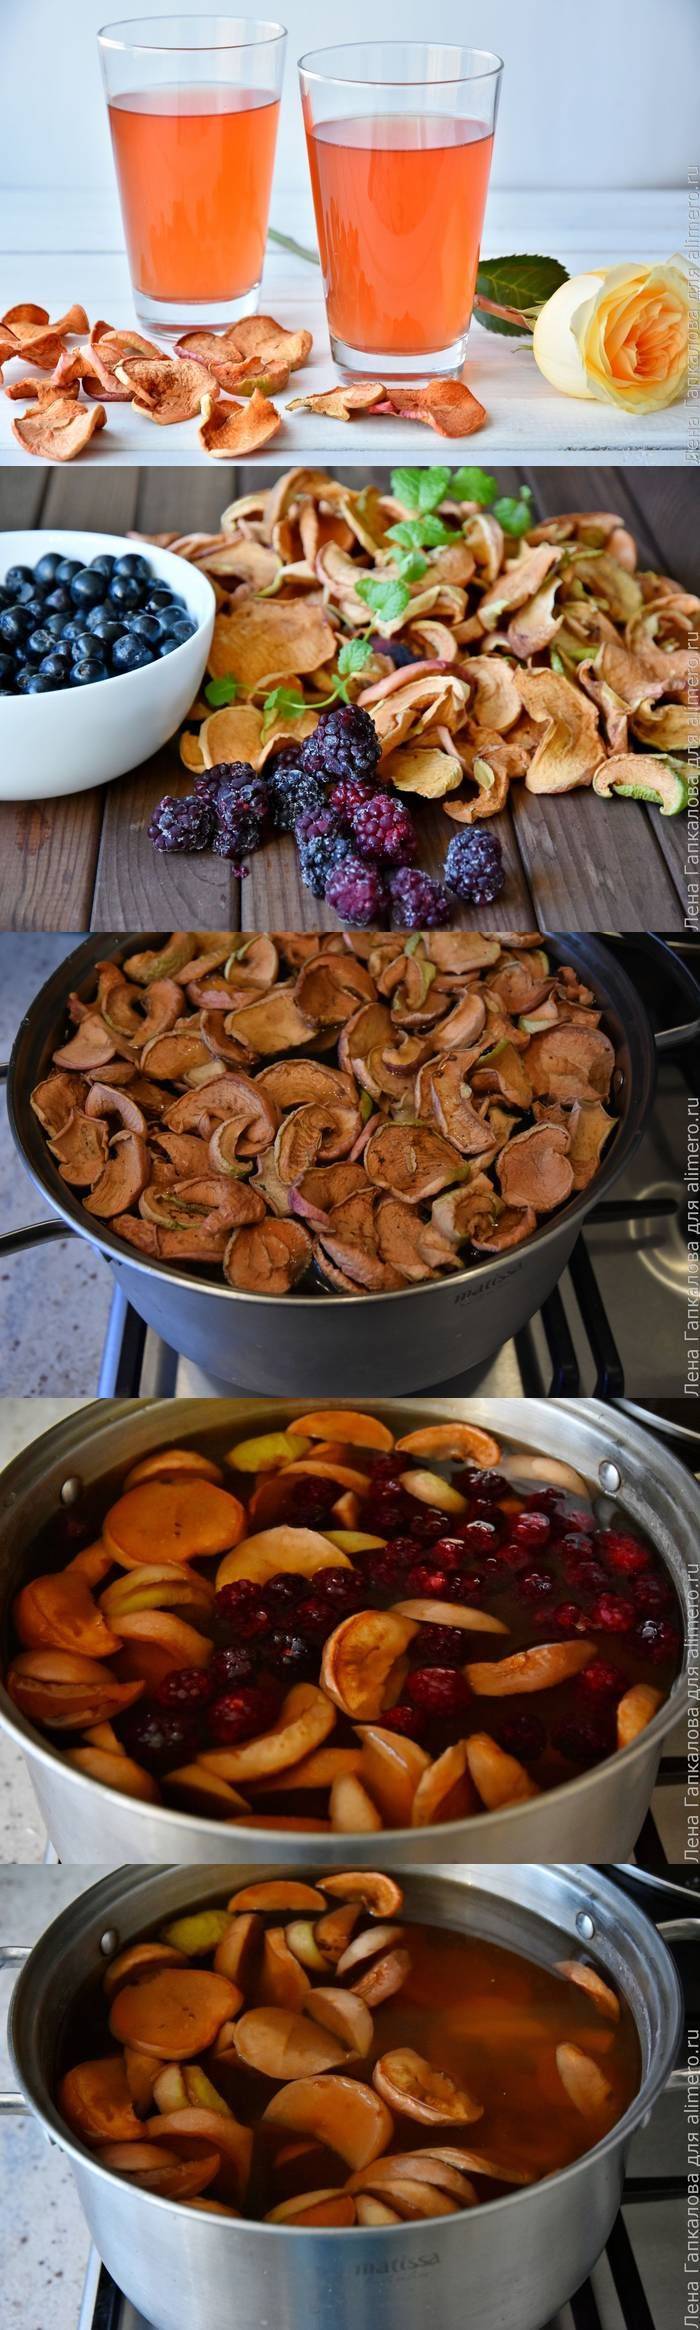 Как варить компот из сухофруктов — пошаговый рецепт